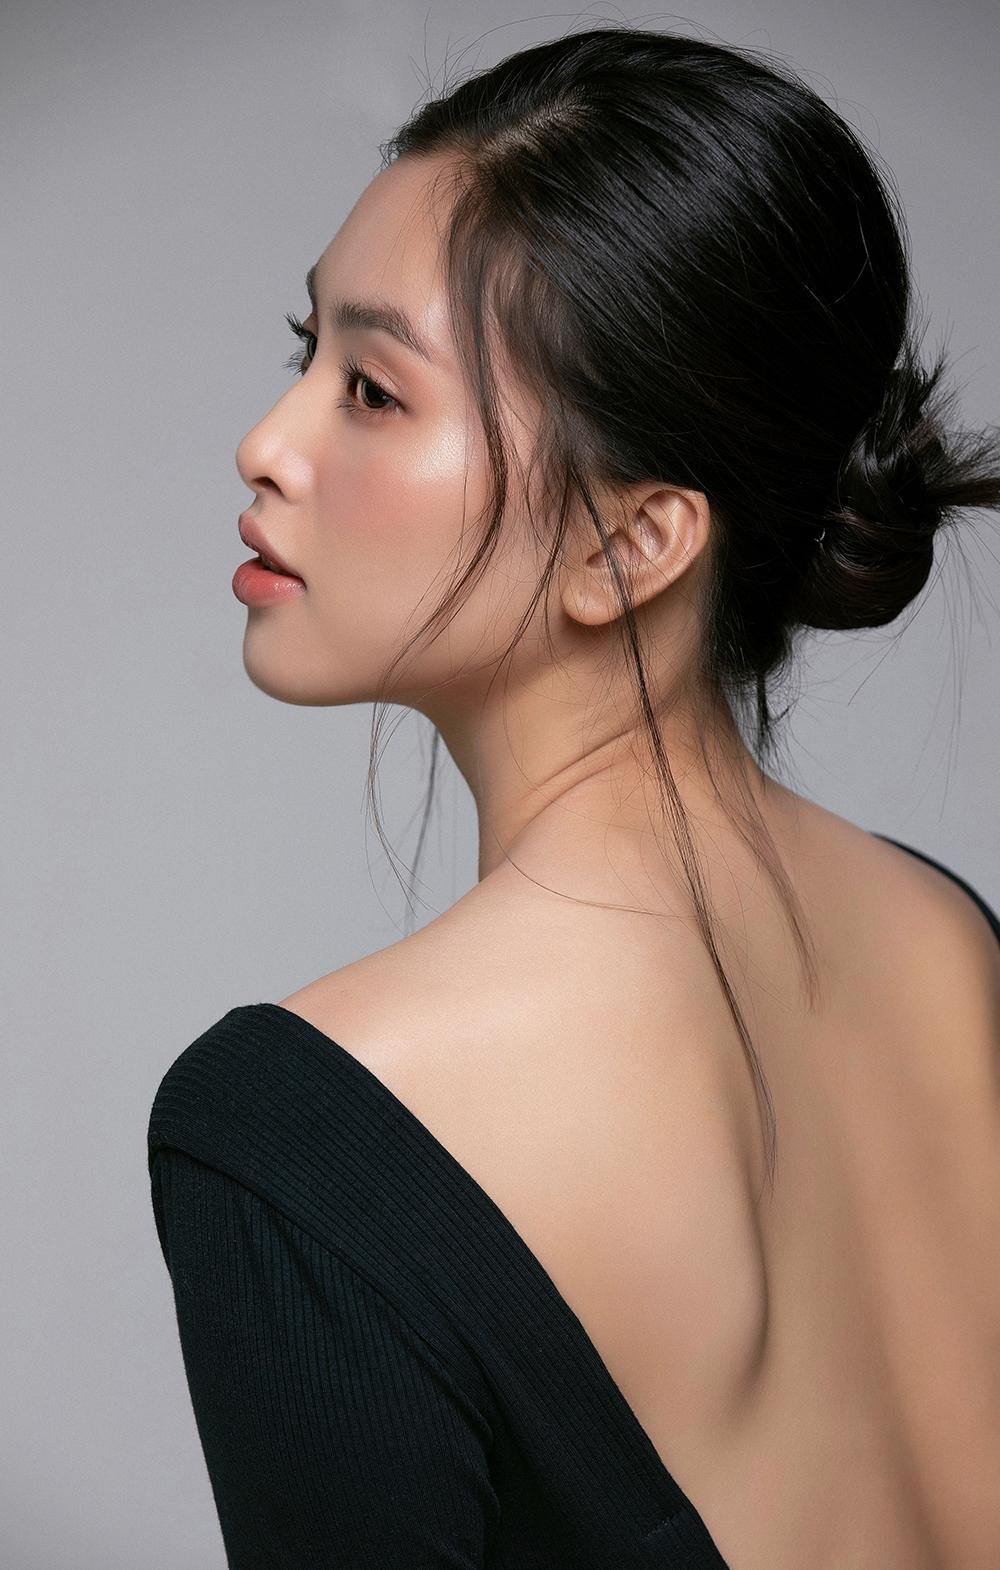 Trang điểm trong veo, Hoa hậu Tiểu Vy vẫn đẹp hút hồn với gương mặt đạt 'tỷ lệ vàng' - Ảnh 5.